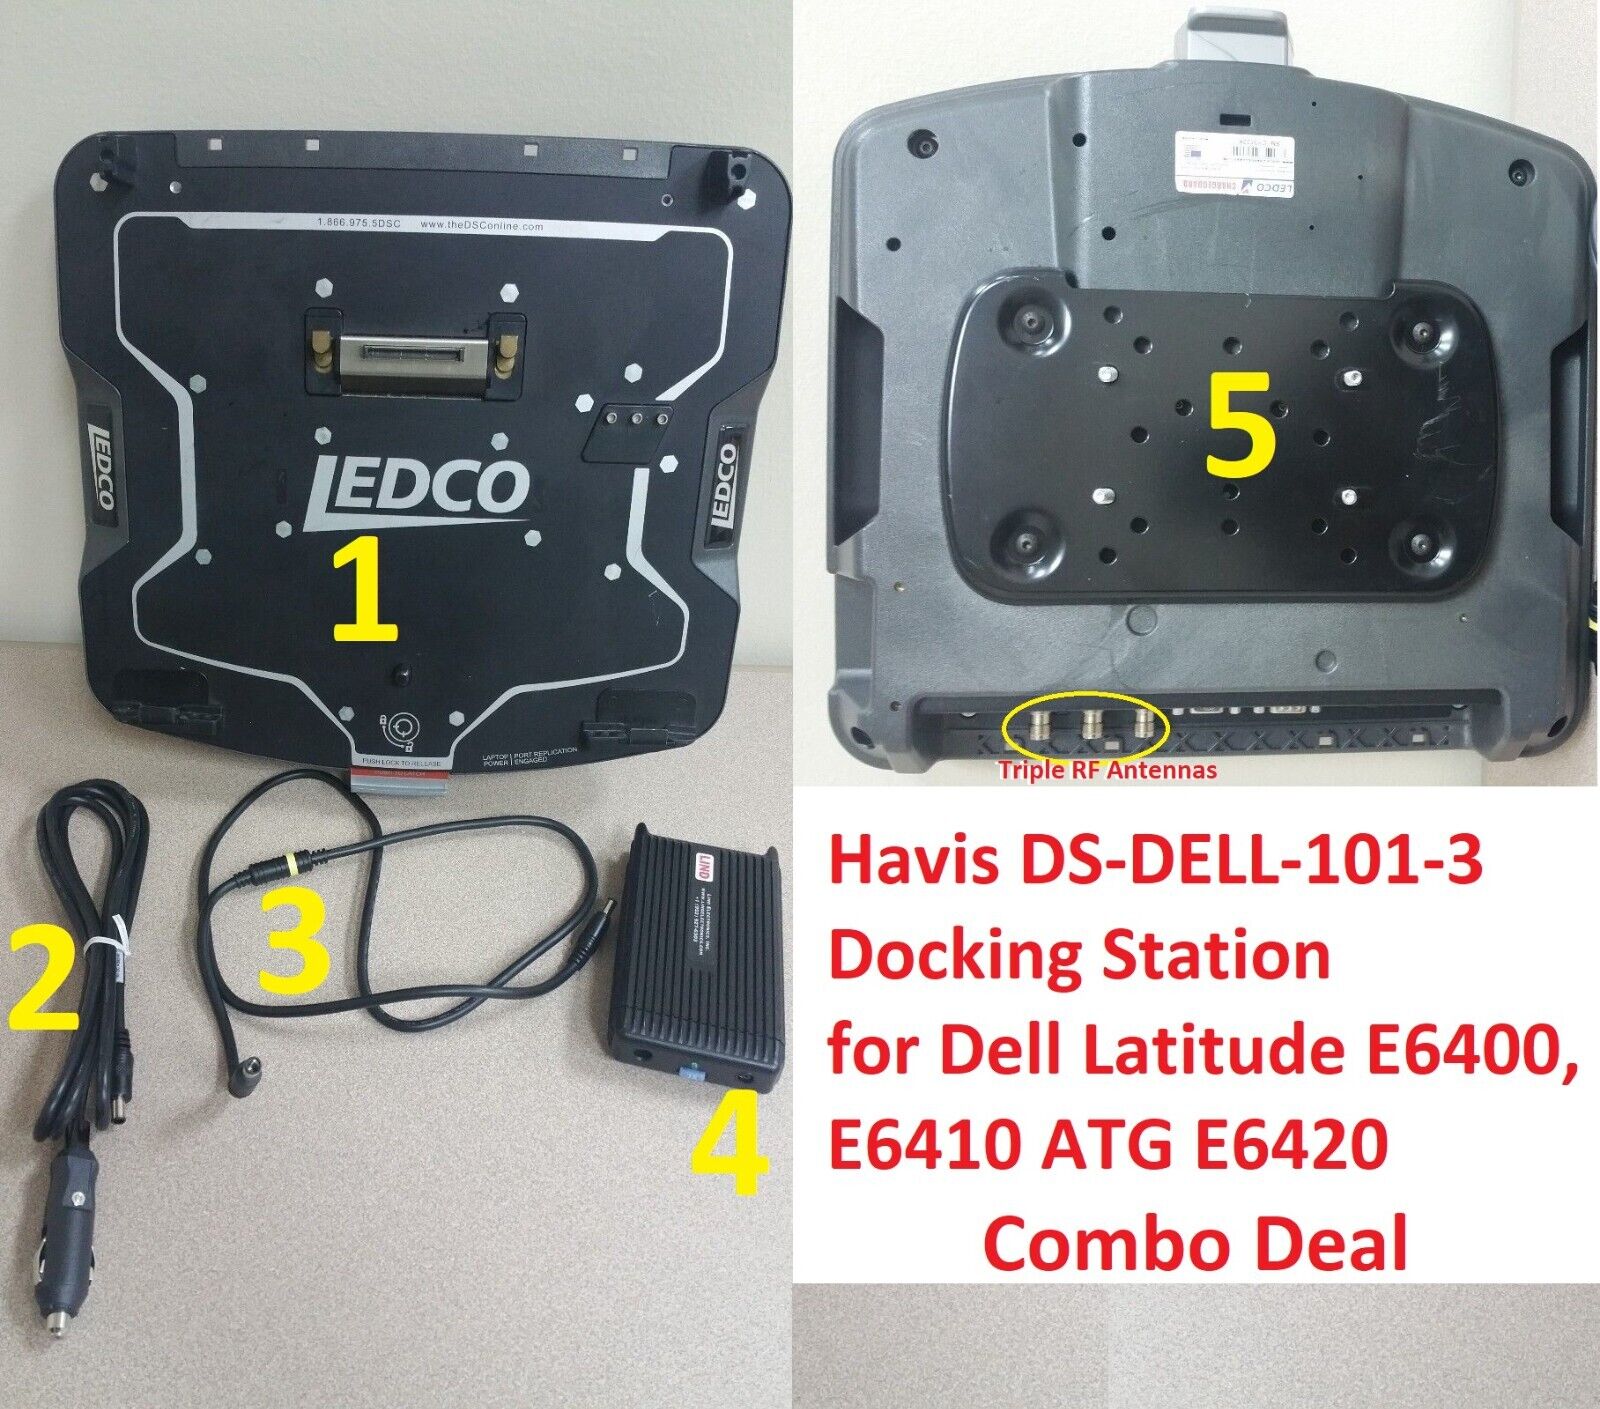 5x Havis DS-DELL-101-3 Docking Stations for Dell Latitude E6400, E6410 ATG E6420